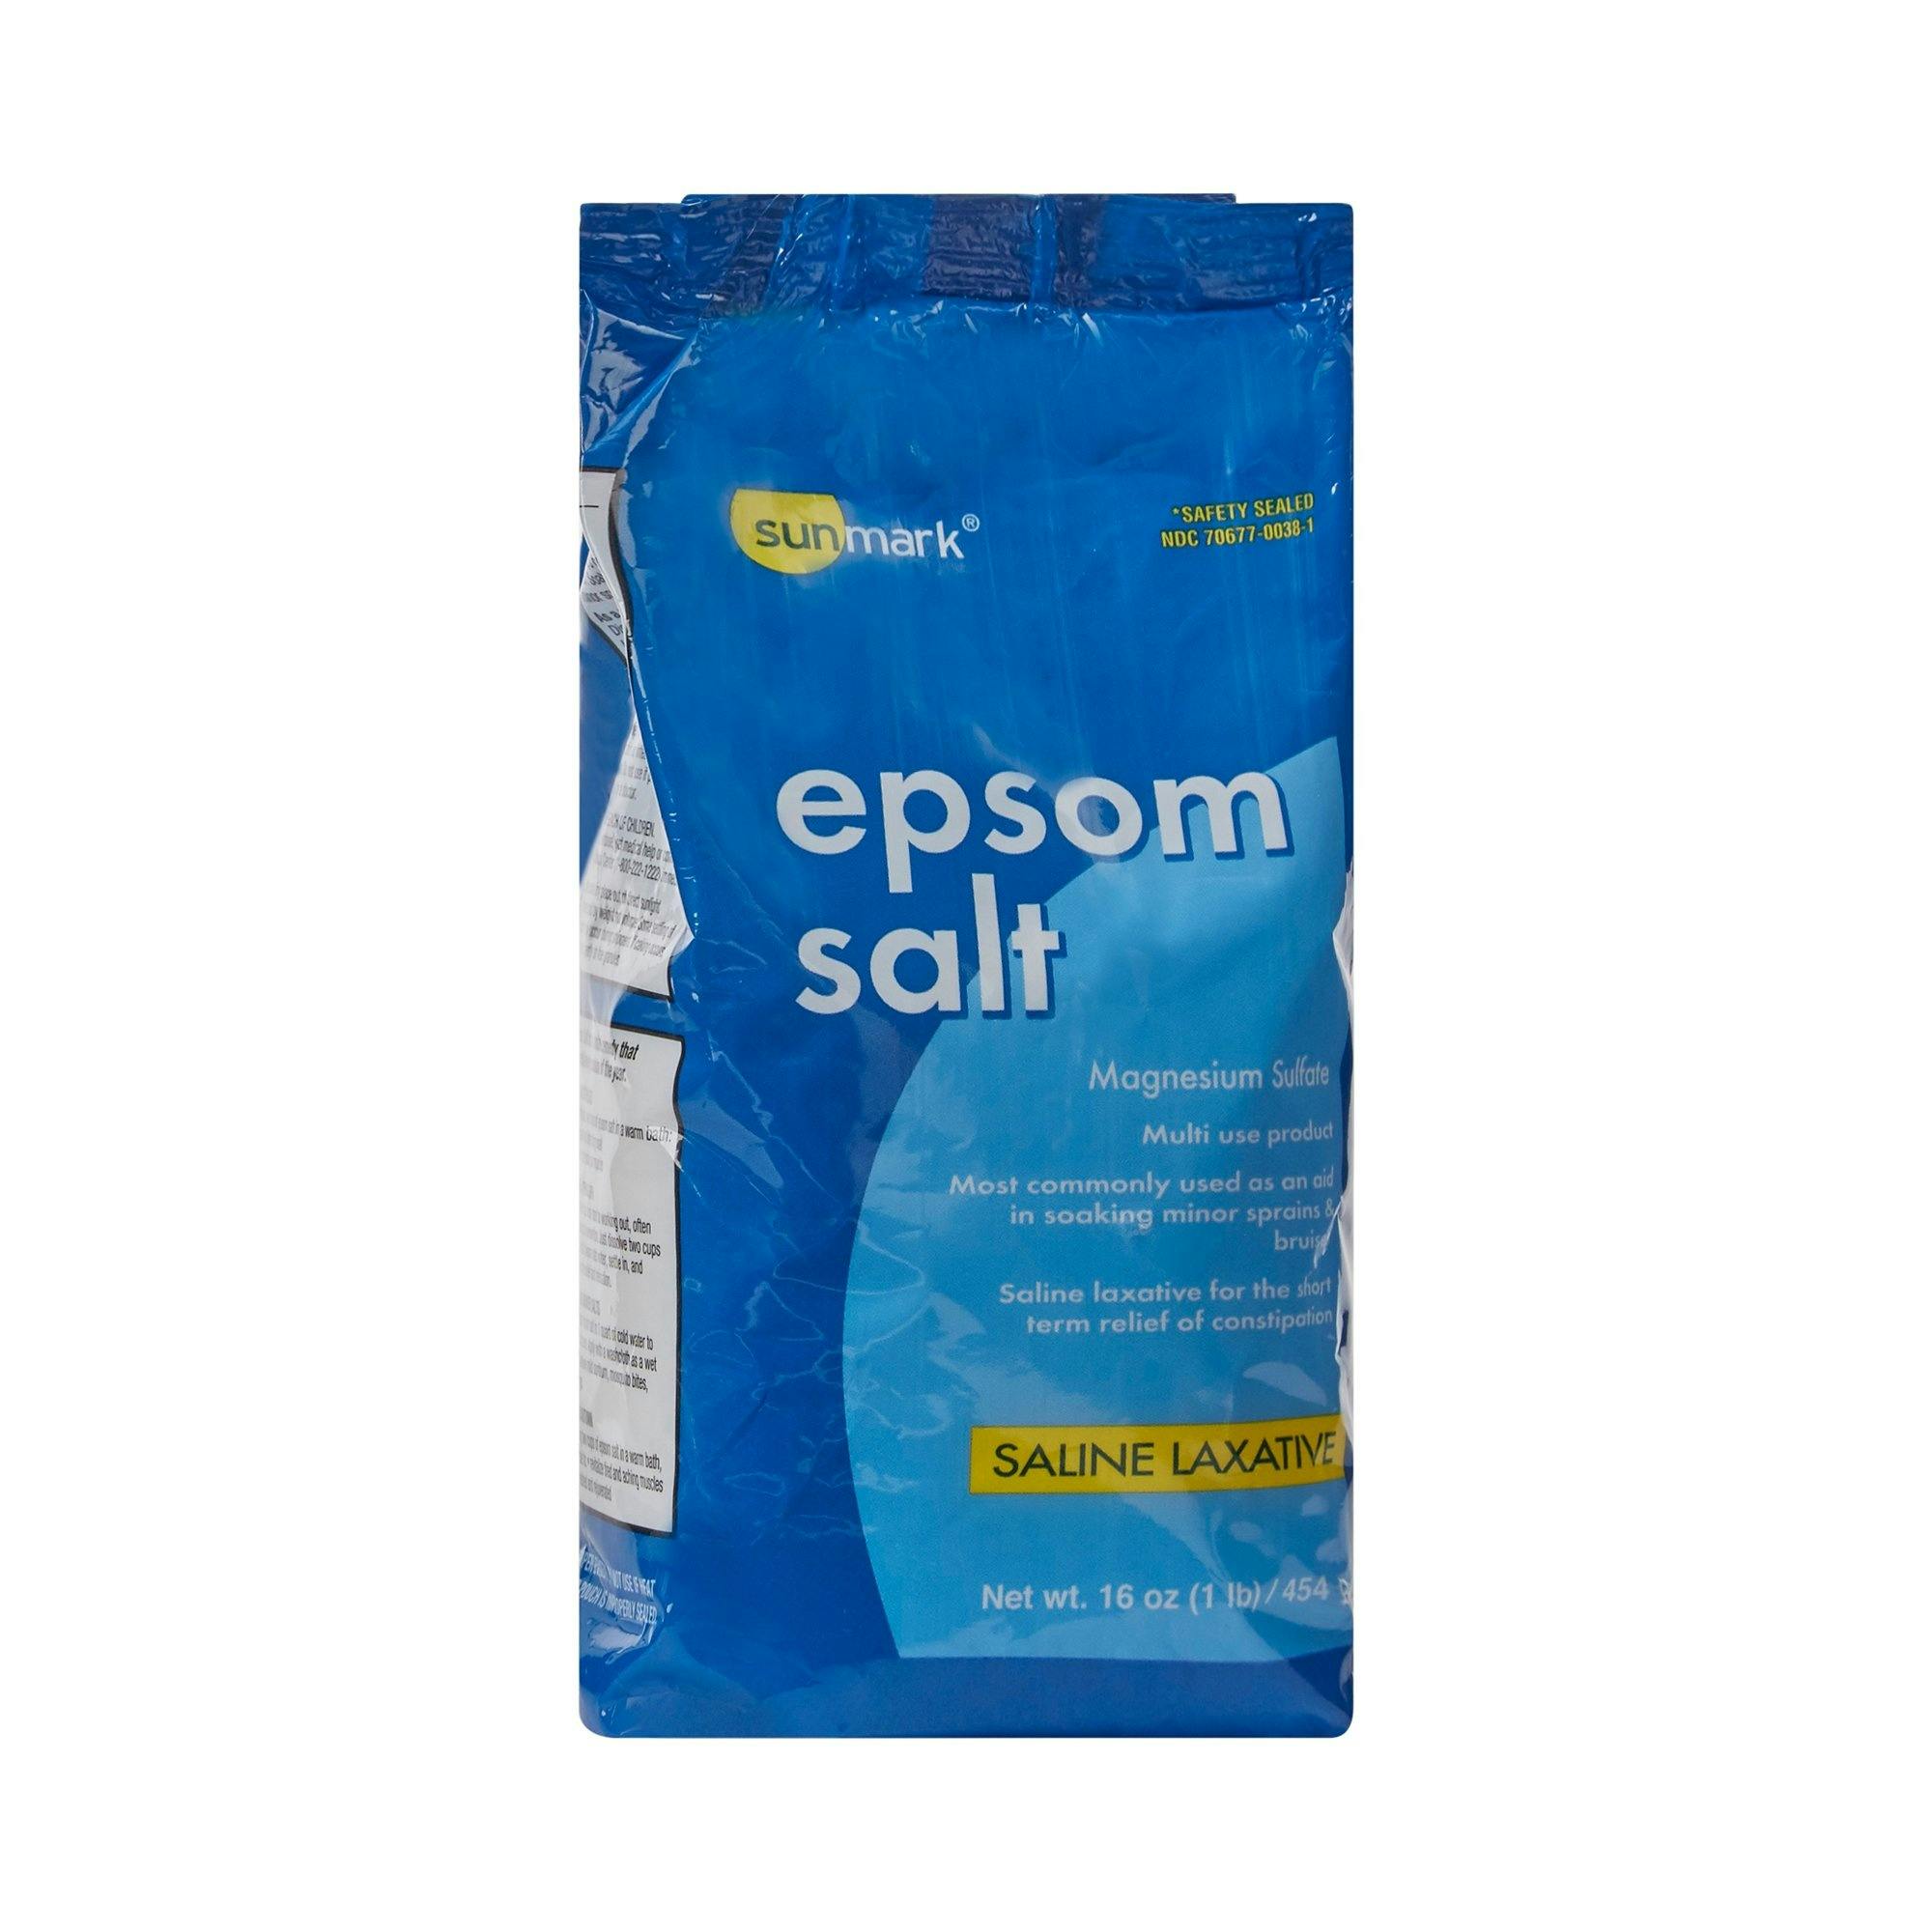 sunmark Epsom Salt, 1 lb., 70677003801, 1 Each